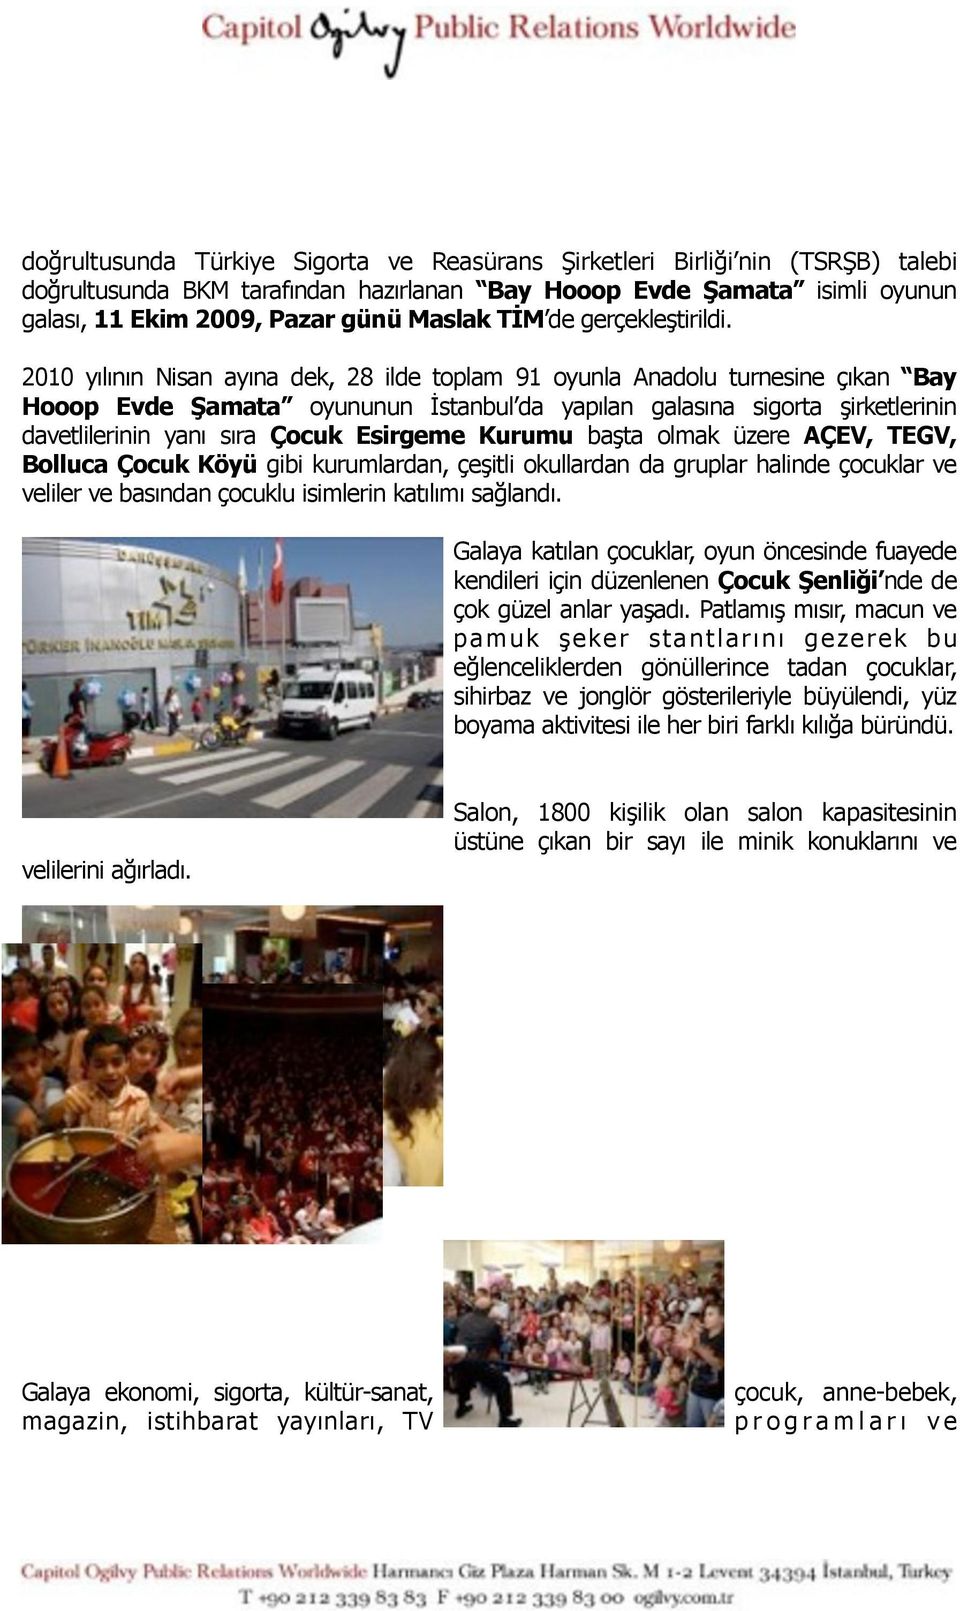 2010 yılının Nisan ayına dek, 28 ilde toplam 91 oyunla Anadolu turnesine çıkan Bay Hooop Evde Şamata oyununun İstanbul da yapılan galasına sigorta şirketlerinin davetlilerinin yanı sıra Çocuk